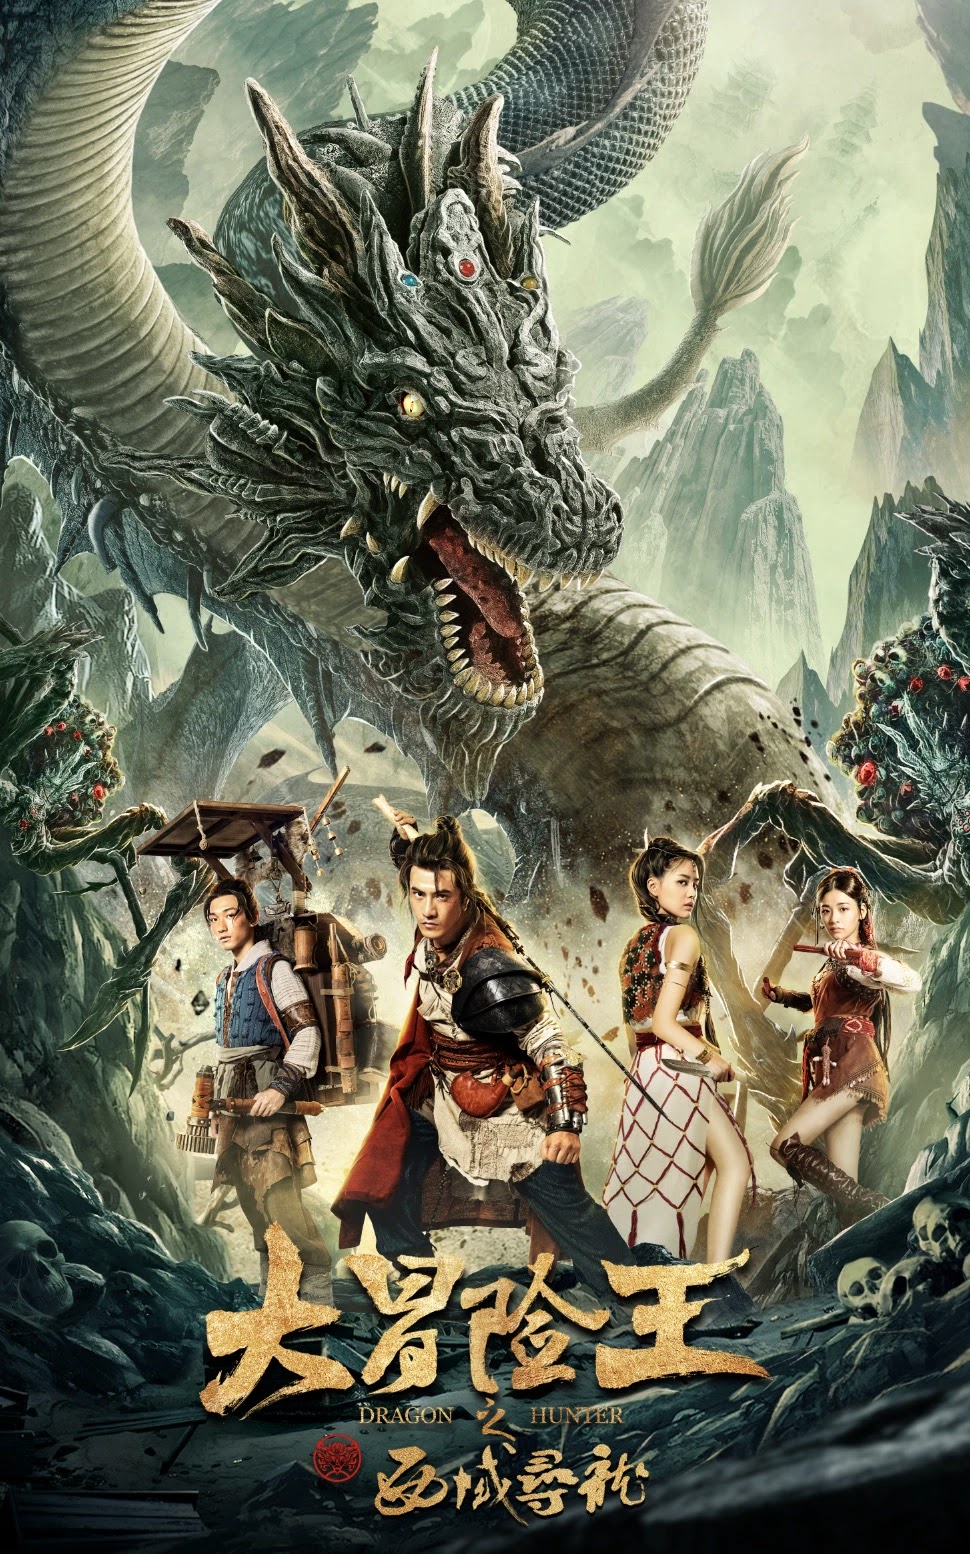 Poster Phim Vua Phiêu Lưu: Thợ Săn Rồng Tây Vực (Dragon Hunting In The Western Regions)